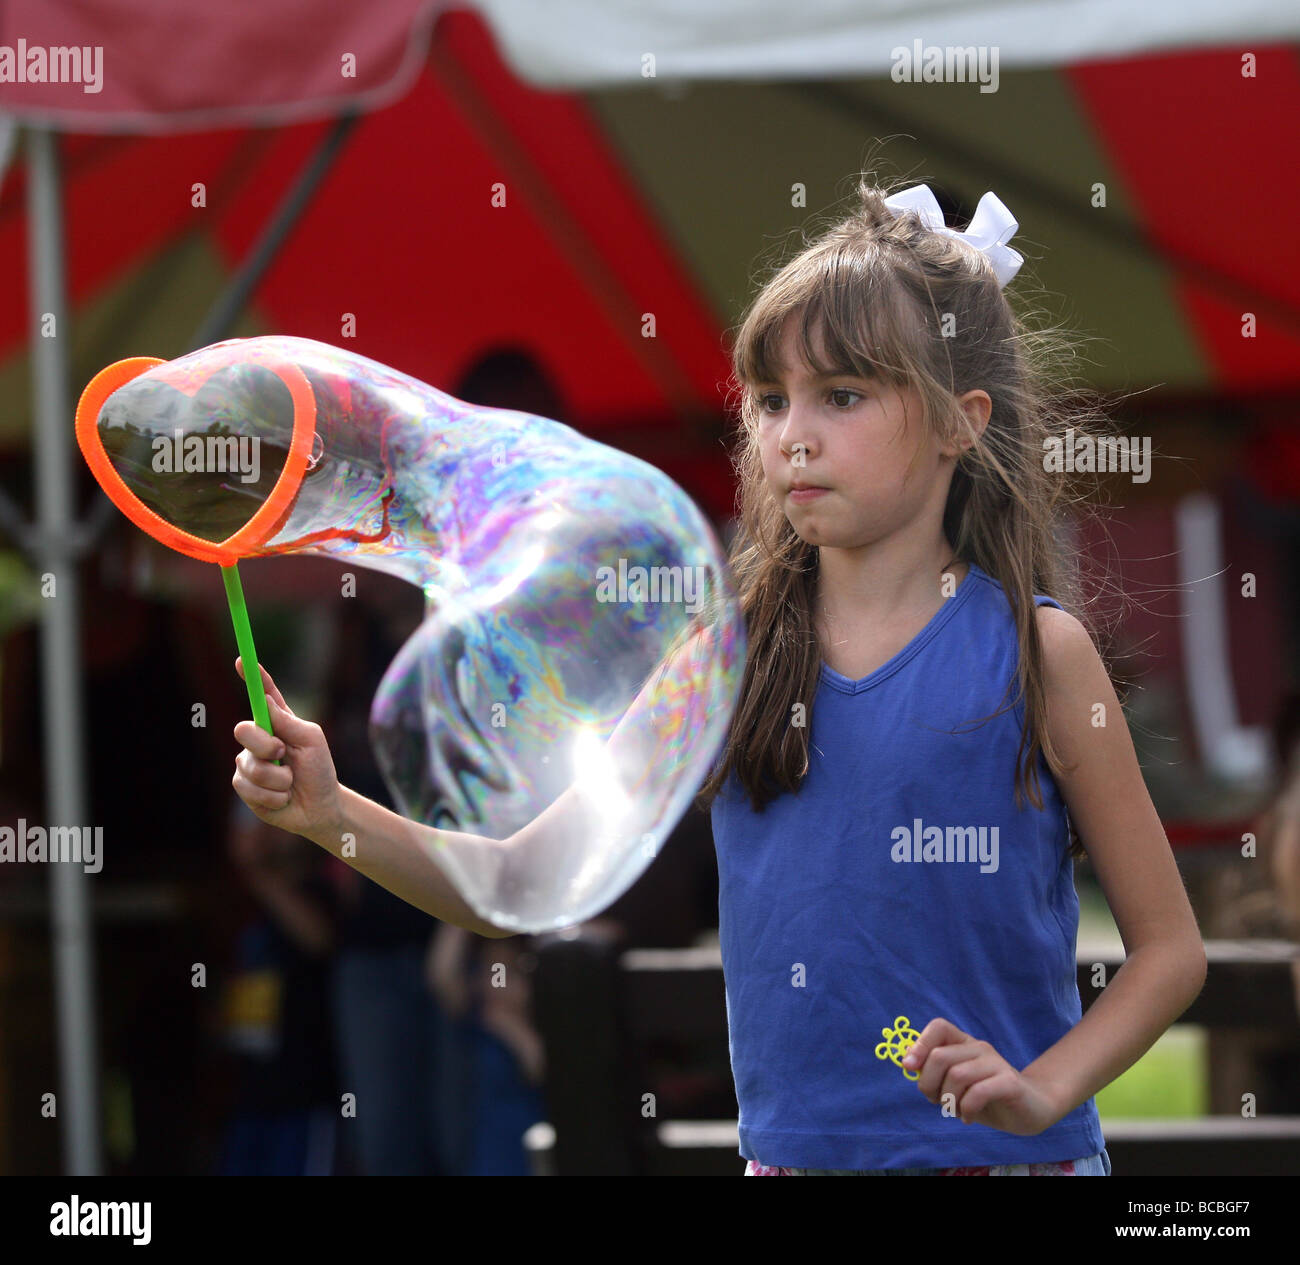 Ein junges Mädchen spielt mit Luftblasen auf einem Shelton Connecticut USA Sommerfestival Stockfoto